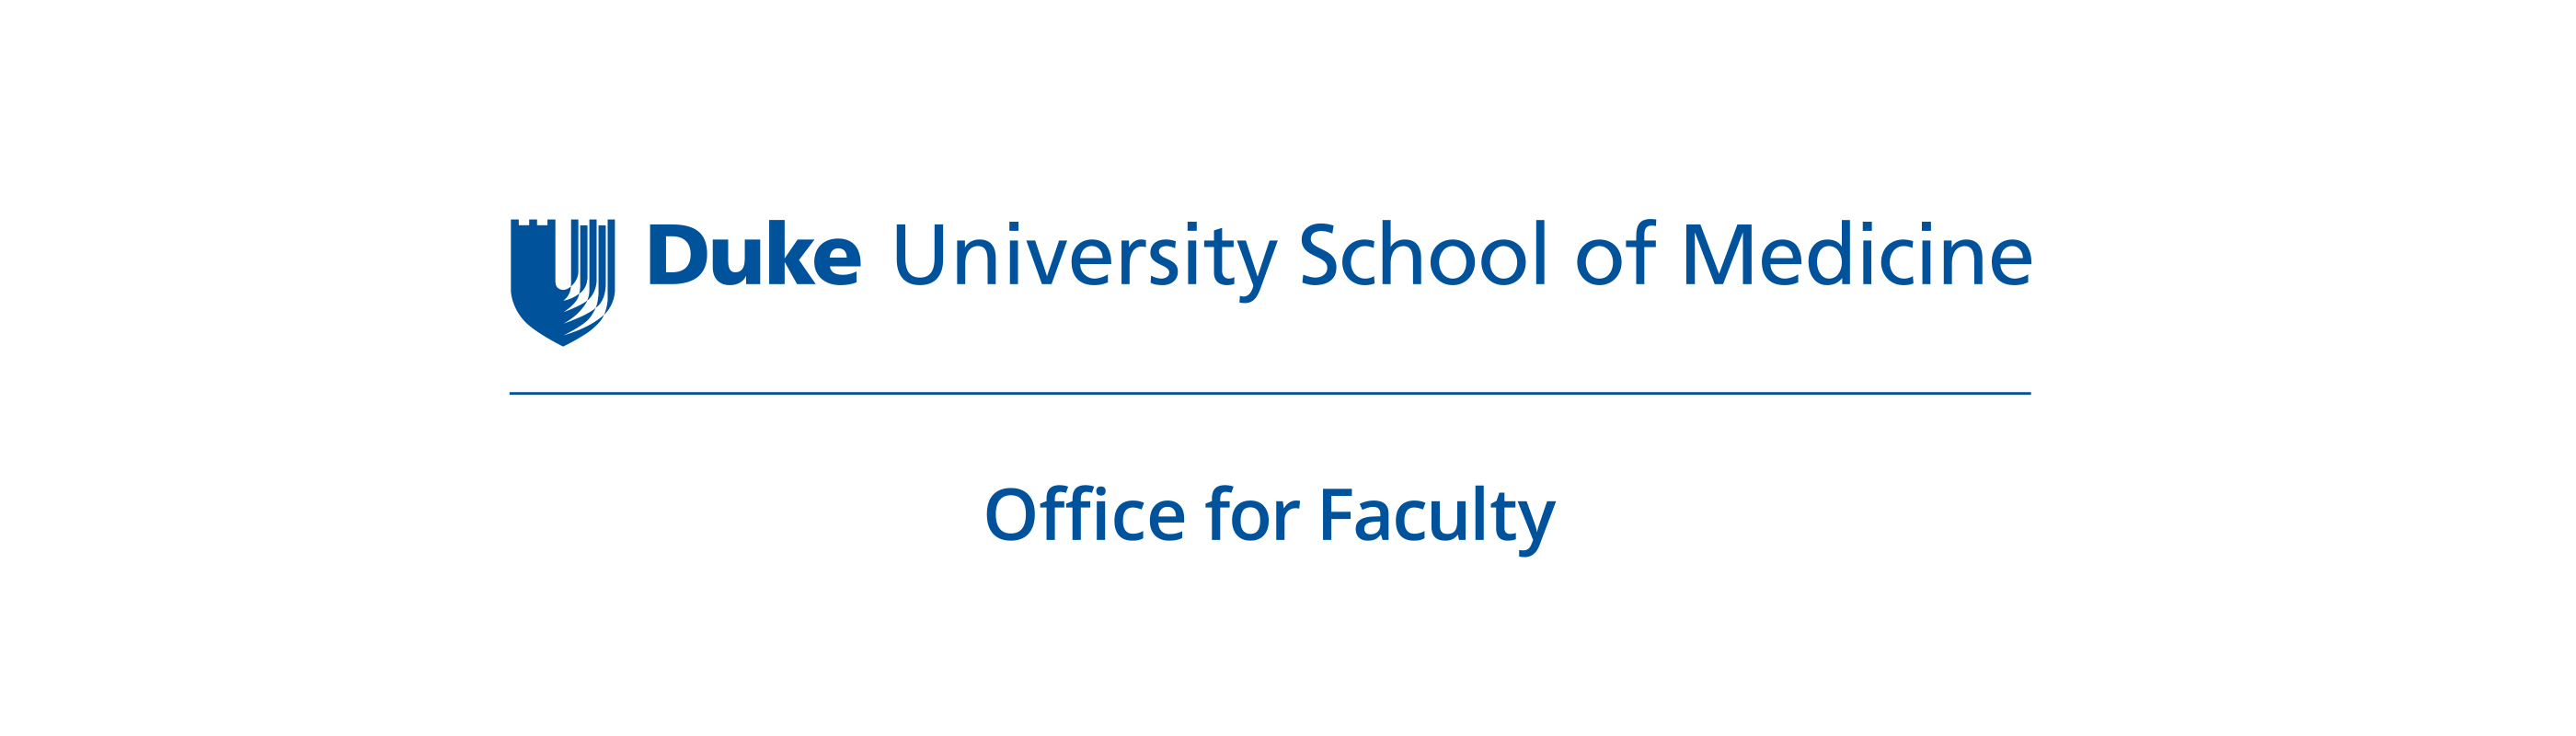 "Duke University School of Medicine Office for Faculty" Logo